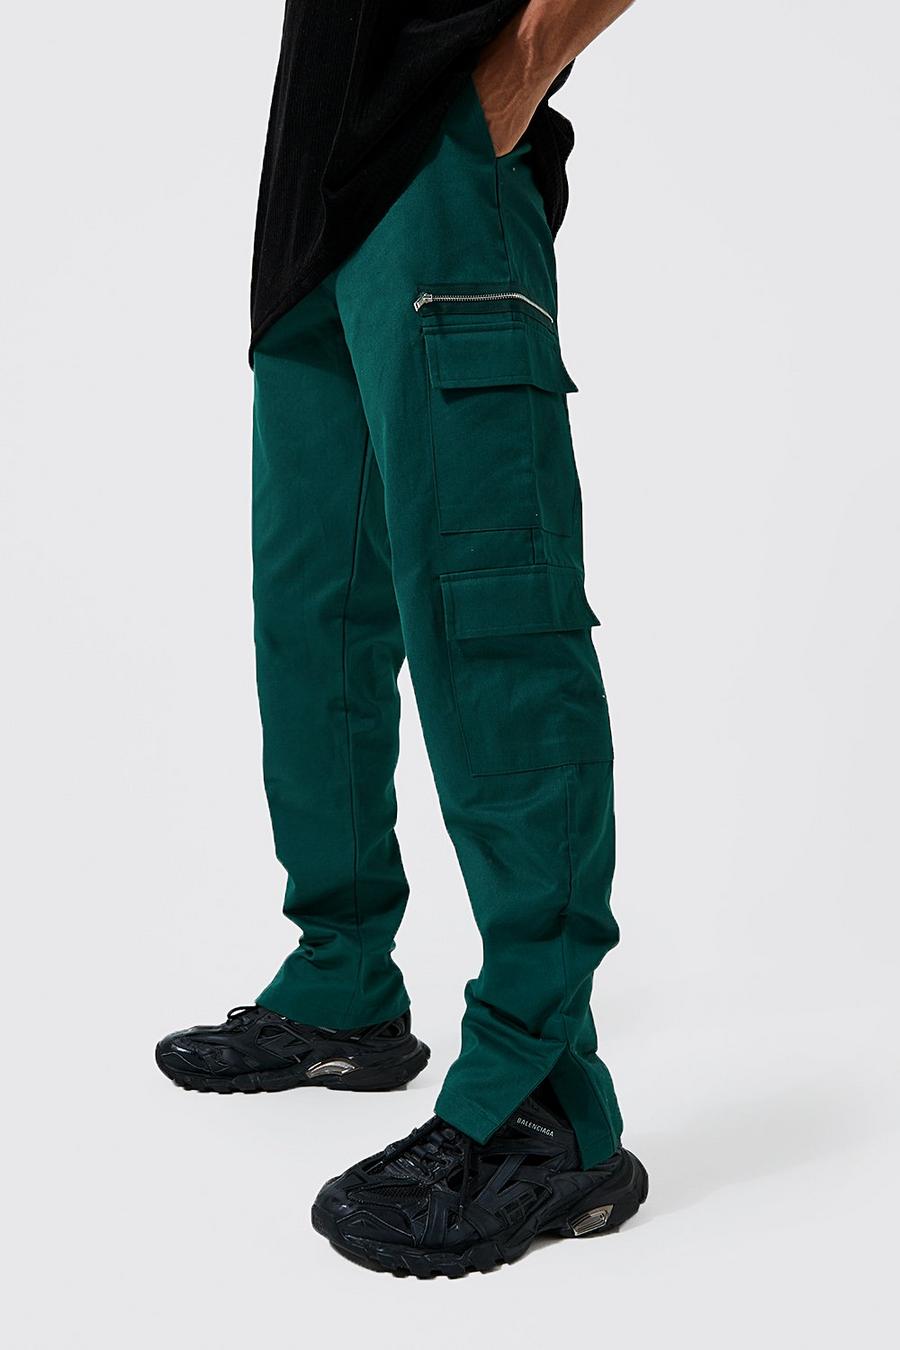 Pantalón Tall de sarga recto con bolsillos cargo, Dark green verde